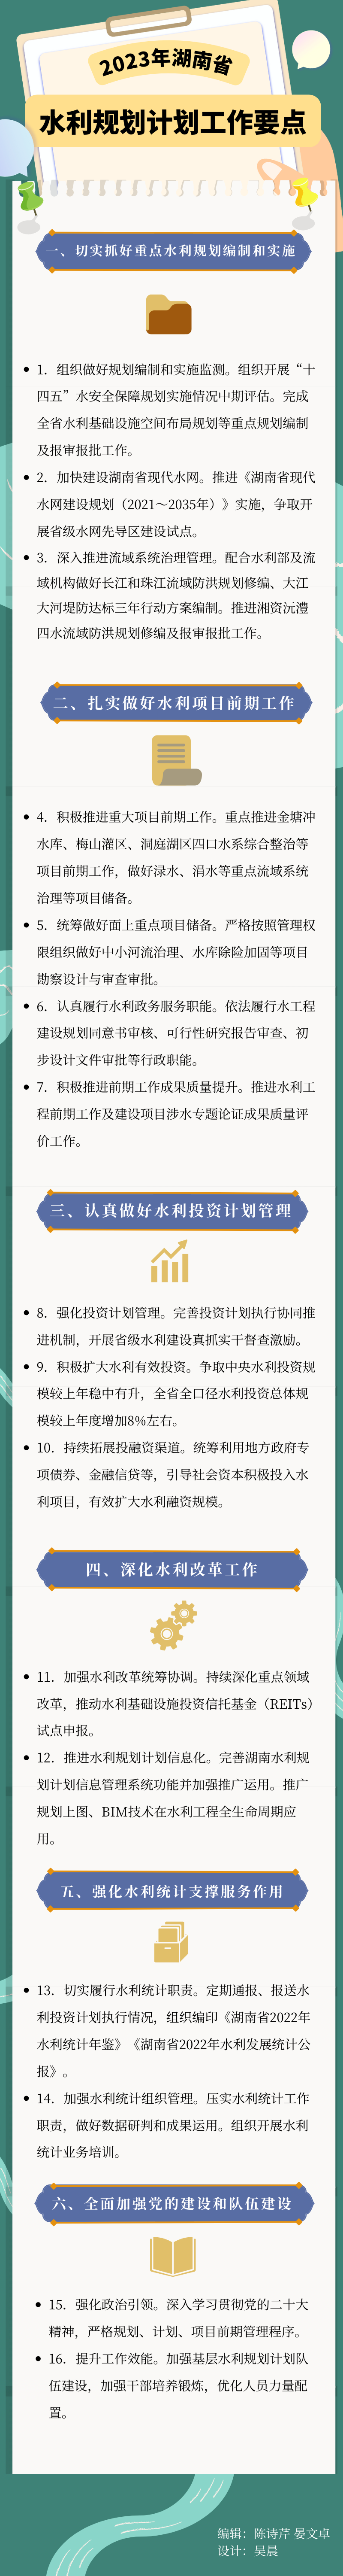 图解丨2023年湖南省水利规划计划工作这么干.png